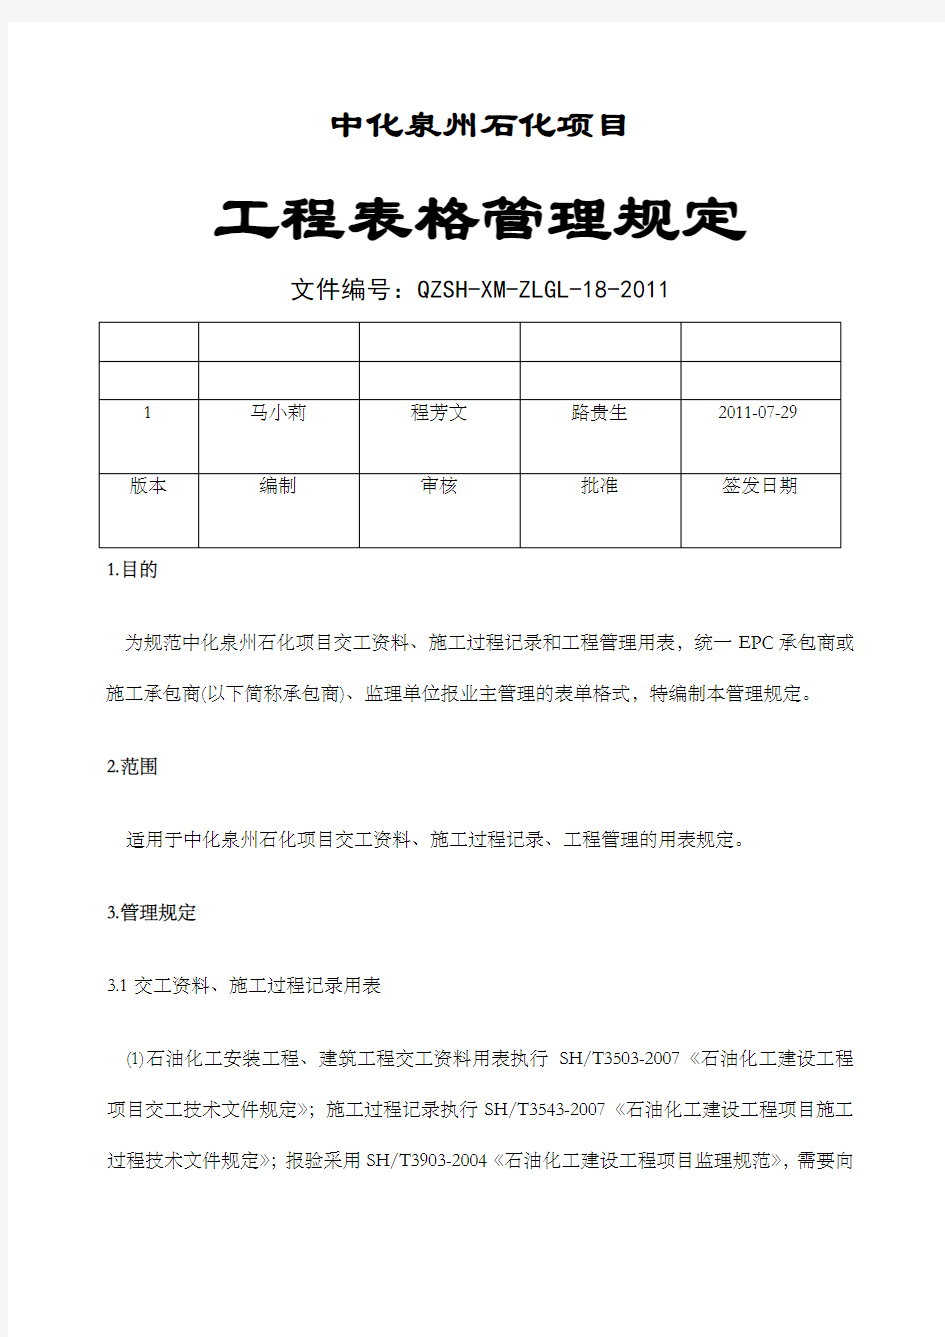 中化泉州石化公司项目管理手册工程表格管理规定